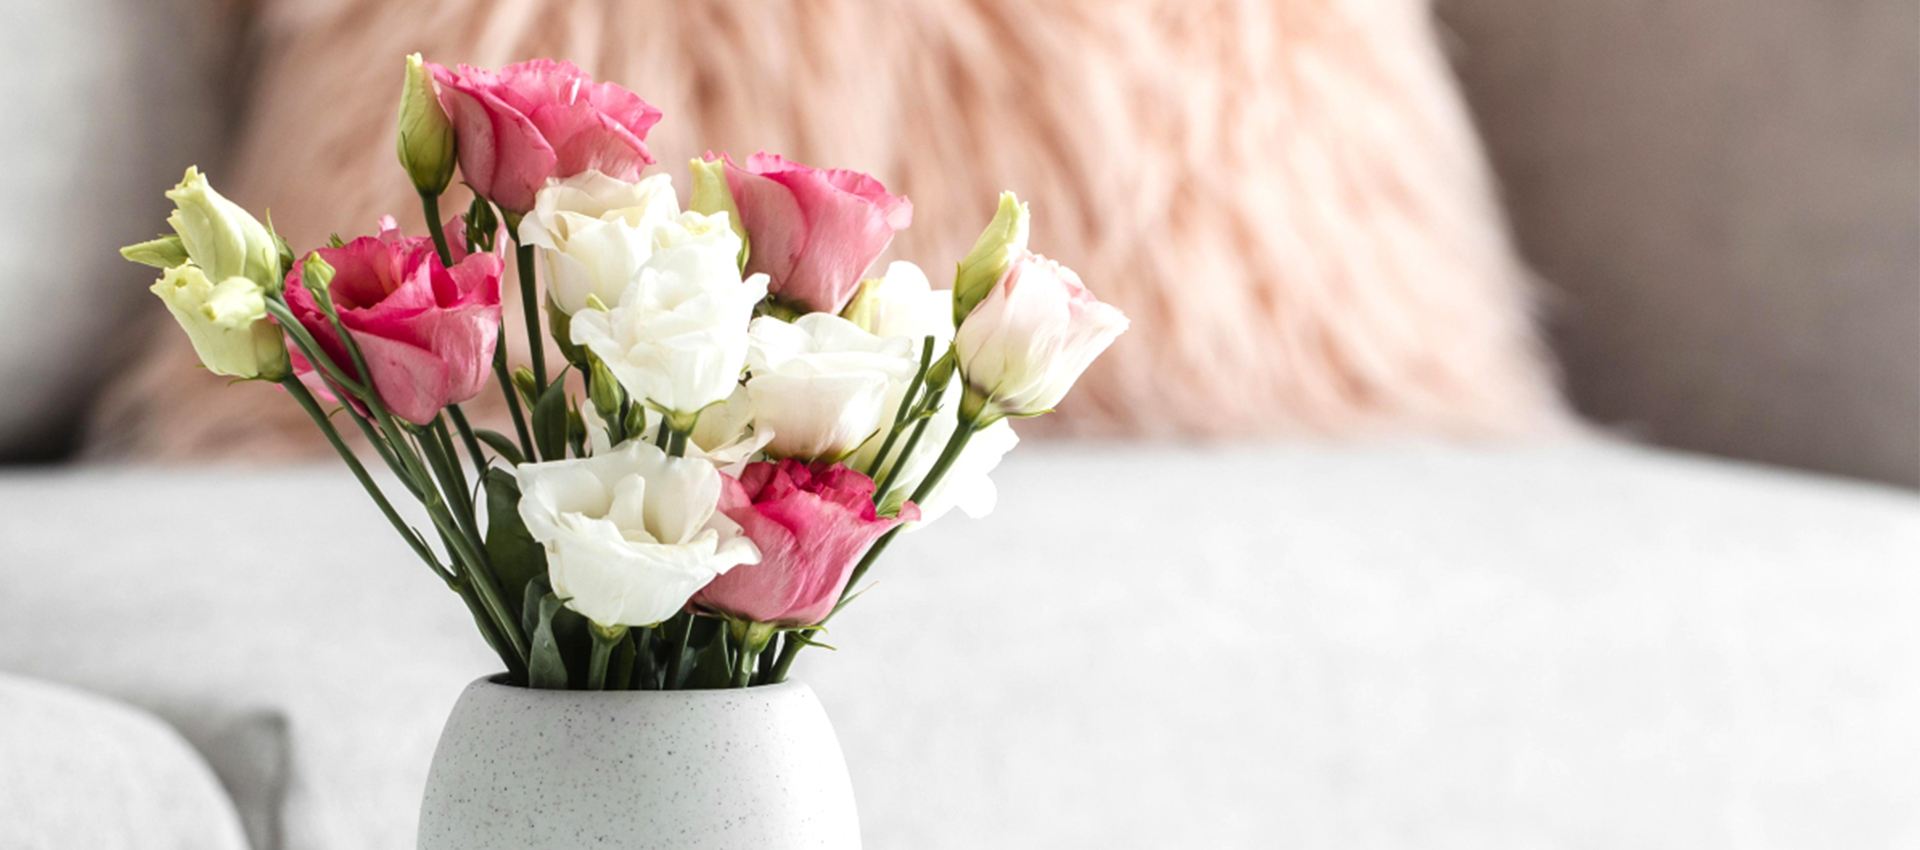 6 начина да запазите цветята във вазата свежи за по-дълго